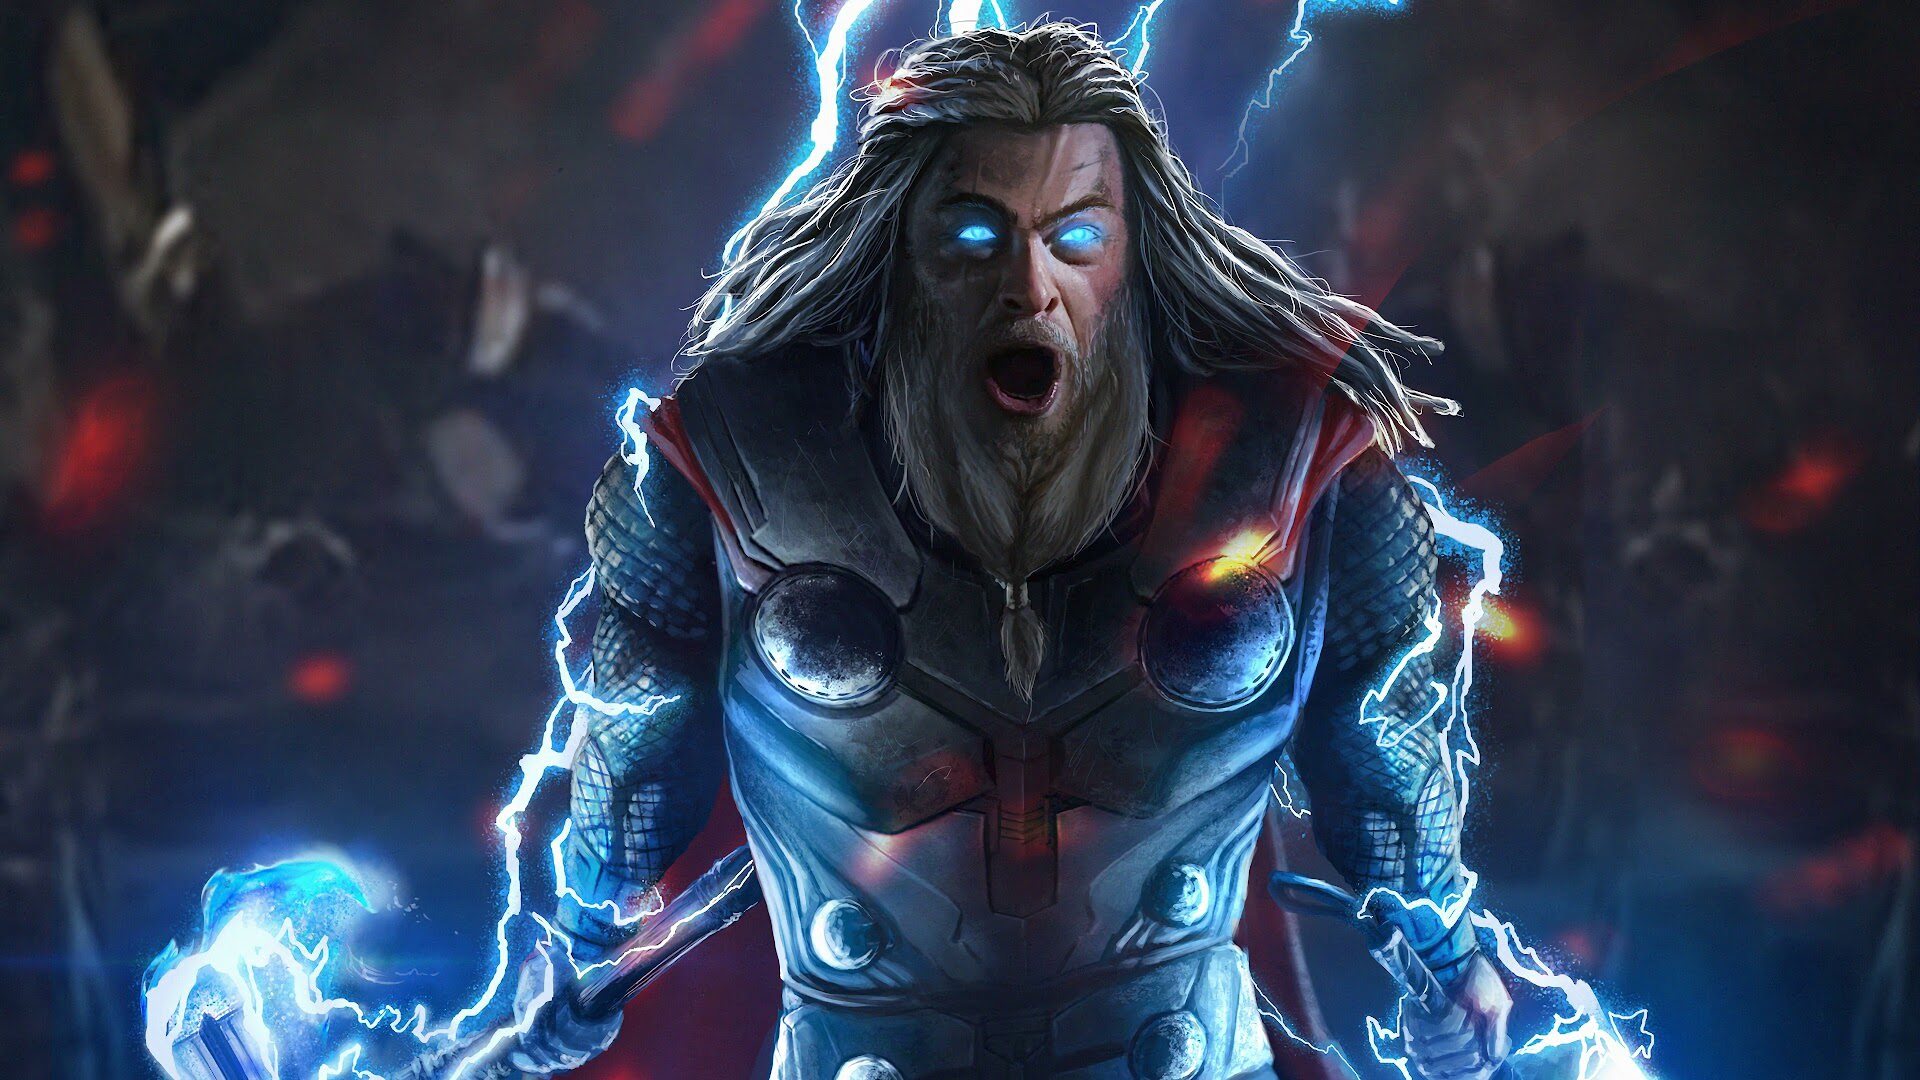 Thor Lightning Avengers Endgame  4K 179 Wallpaper 